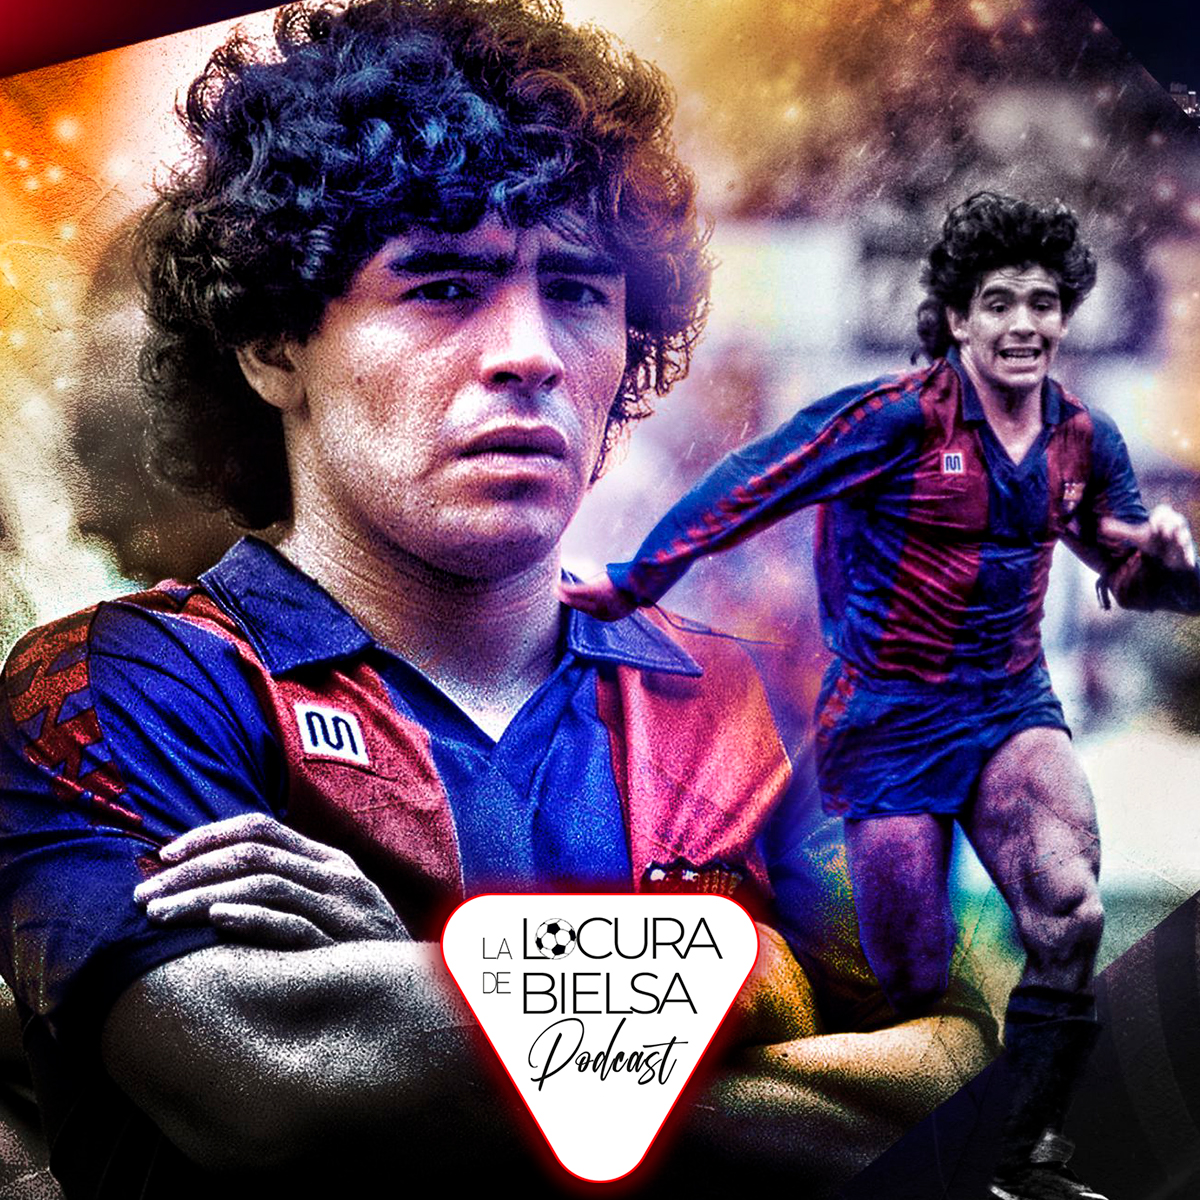 Maradona en el Barcelona Locura de Bielsa Podcast de fútbol